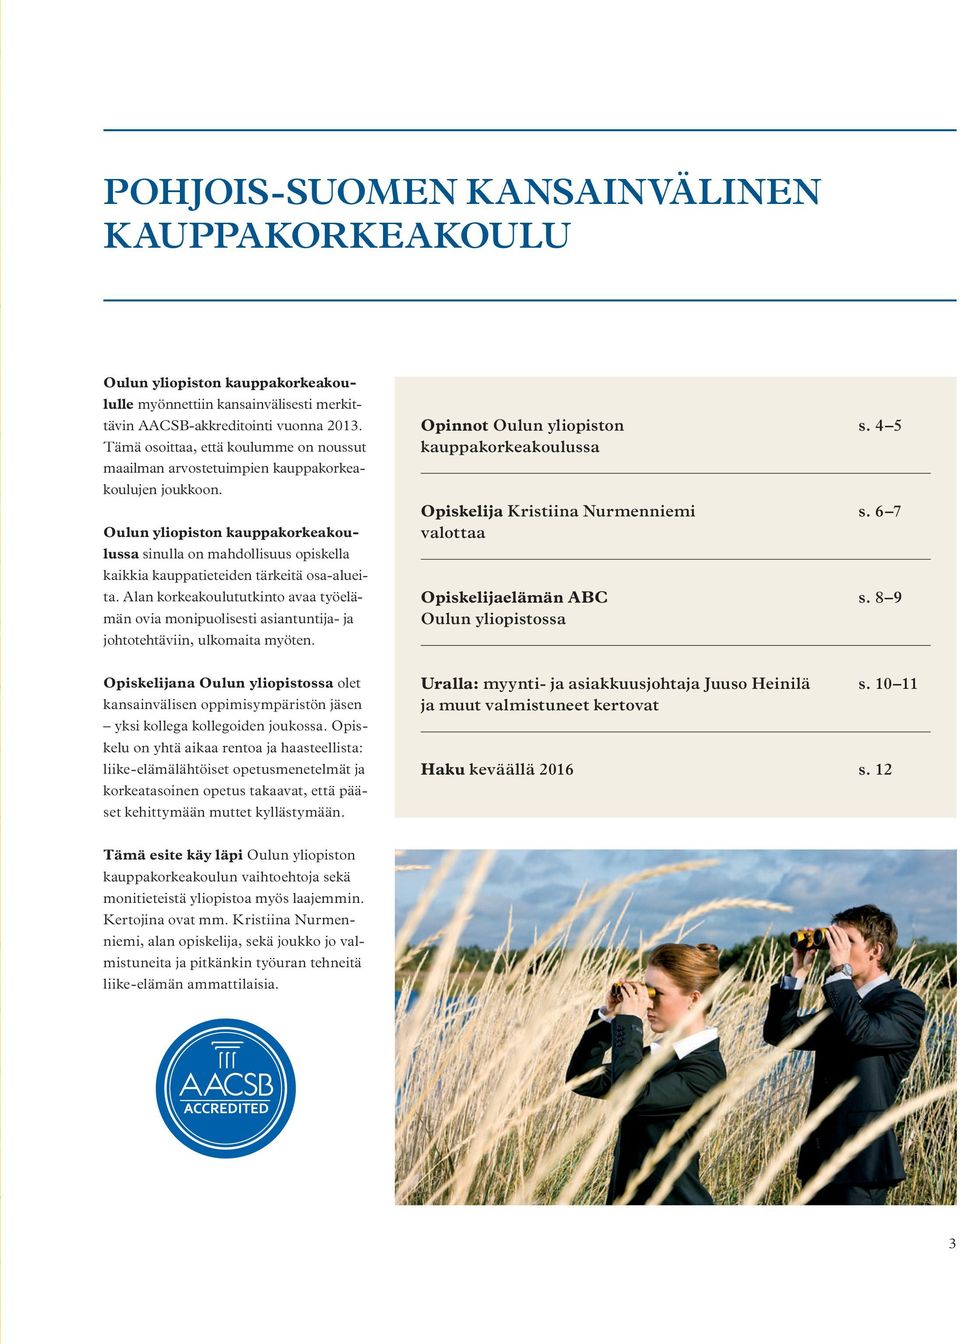 Oulun yliopiston kauppakorkeakoulussa sinulla on mahdollisuus opiskella kaikkia kauppatieteiden tärkeitä osa-alueita.